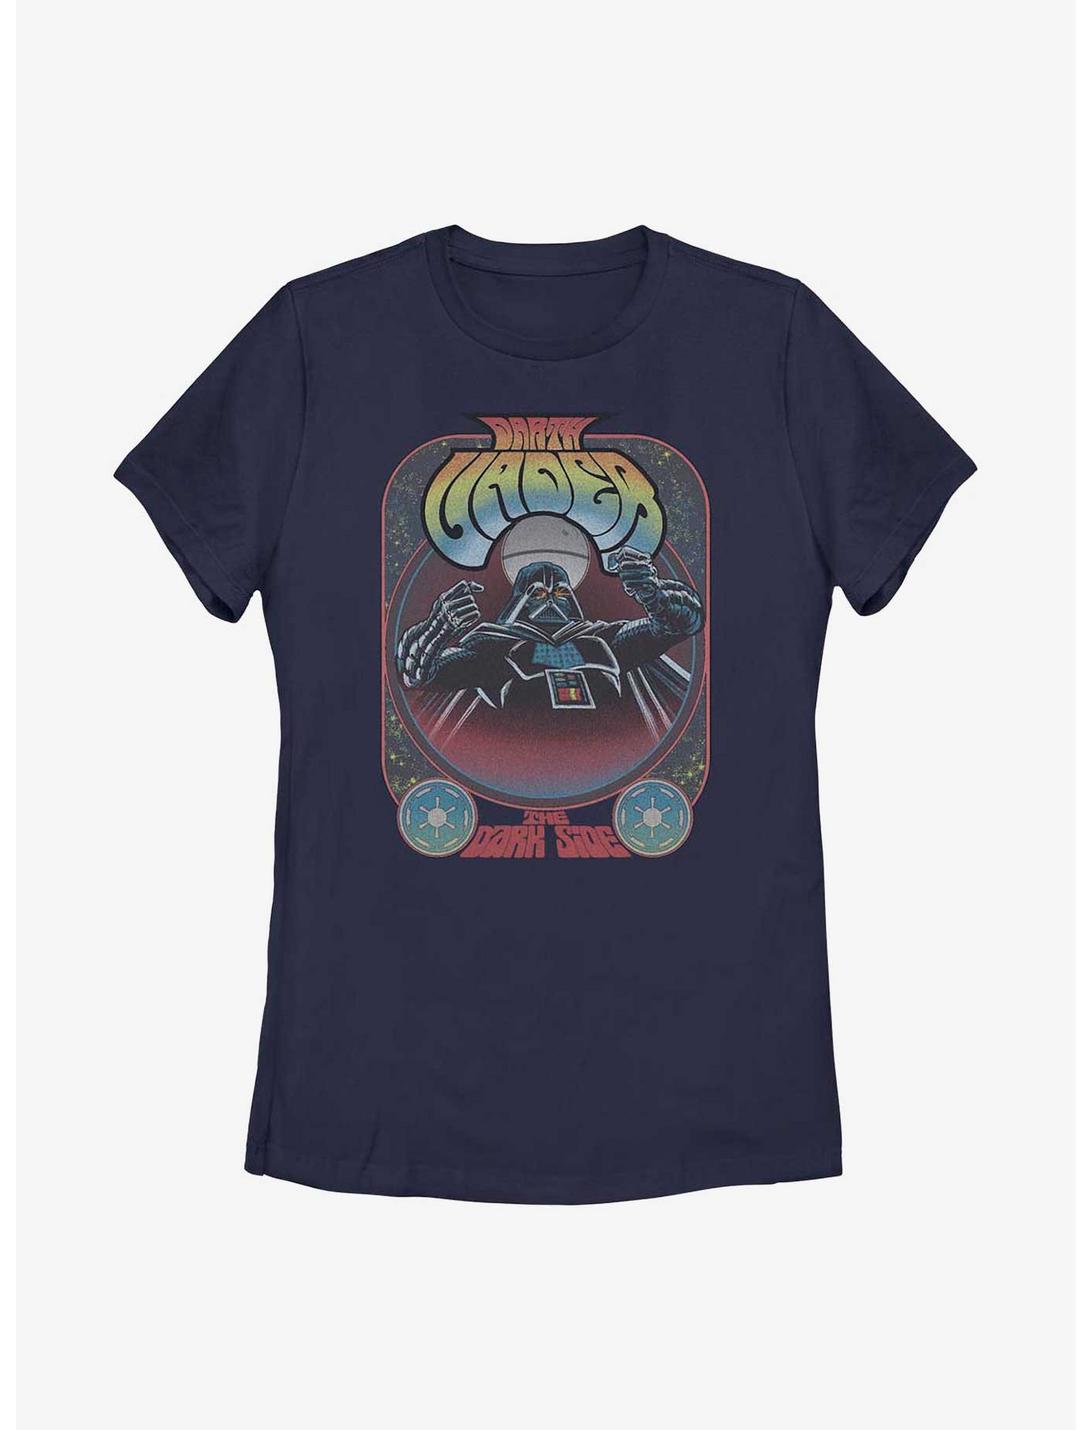 Star Wars Darth Vader Dark Side Groovy Womens T-Shirt, NAVY, hi-res